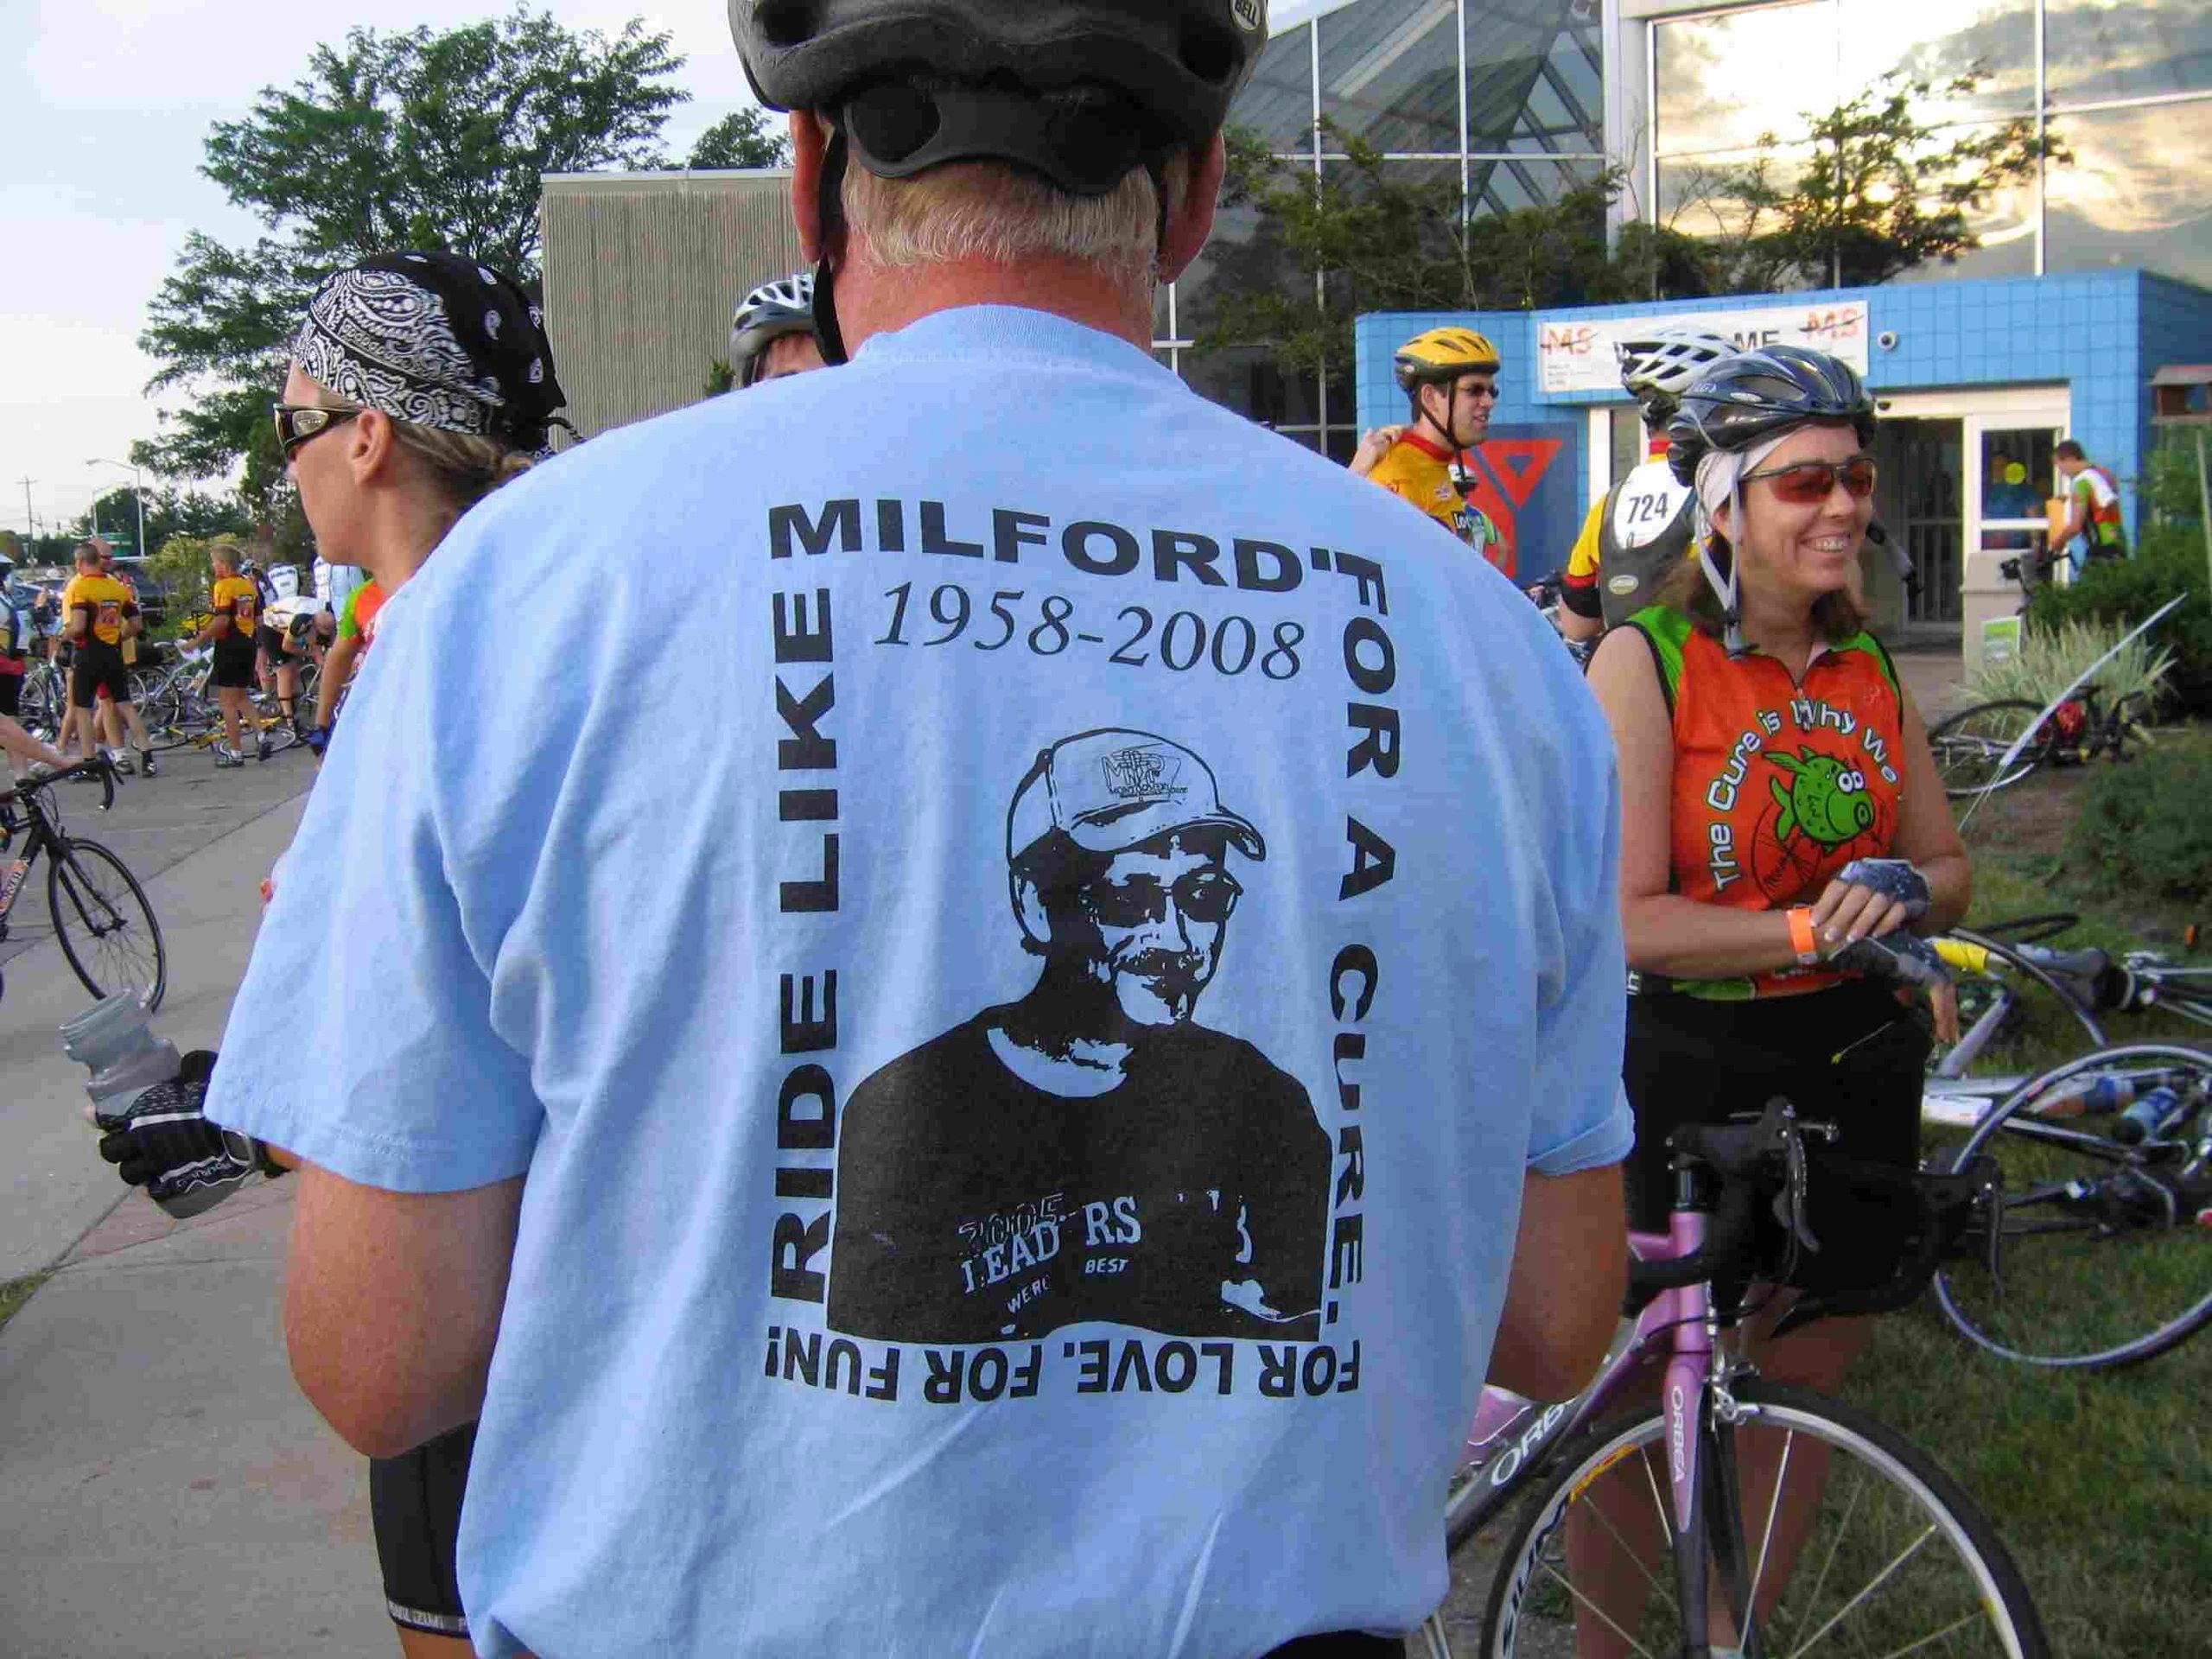 In Honor of Milford Beachy 2008